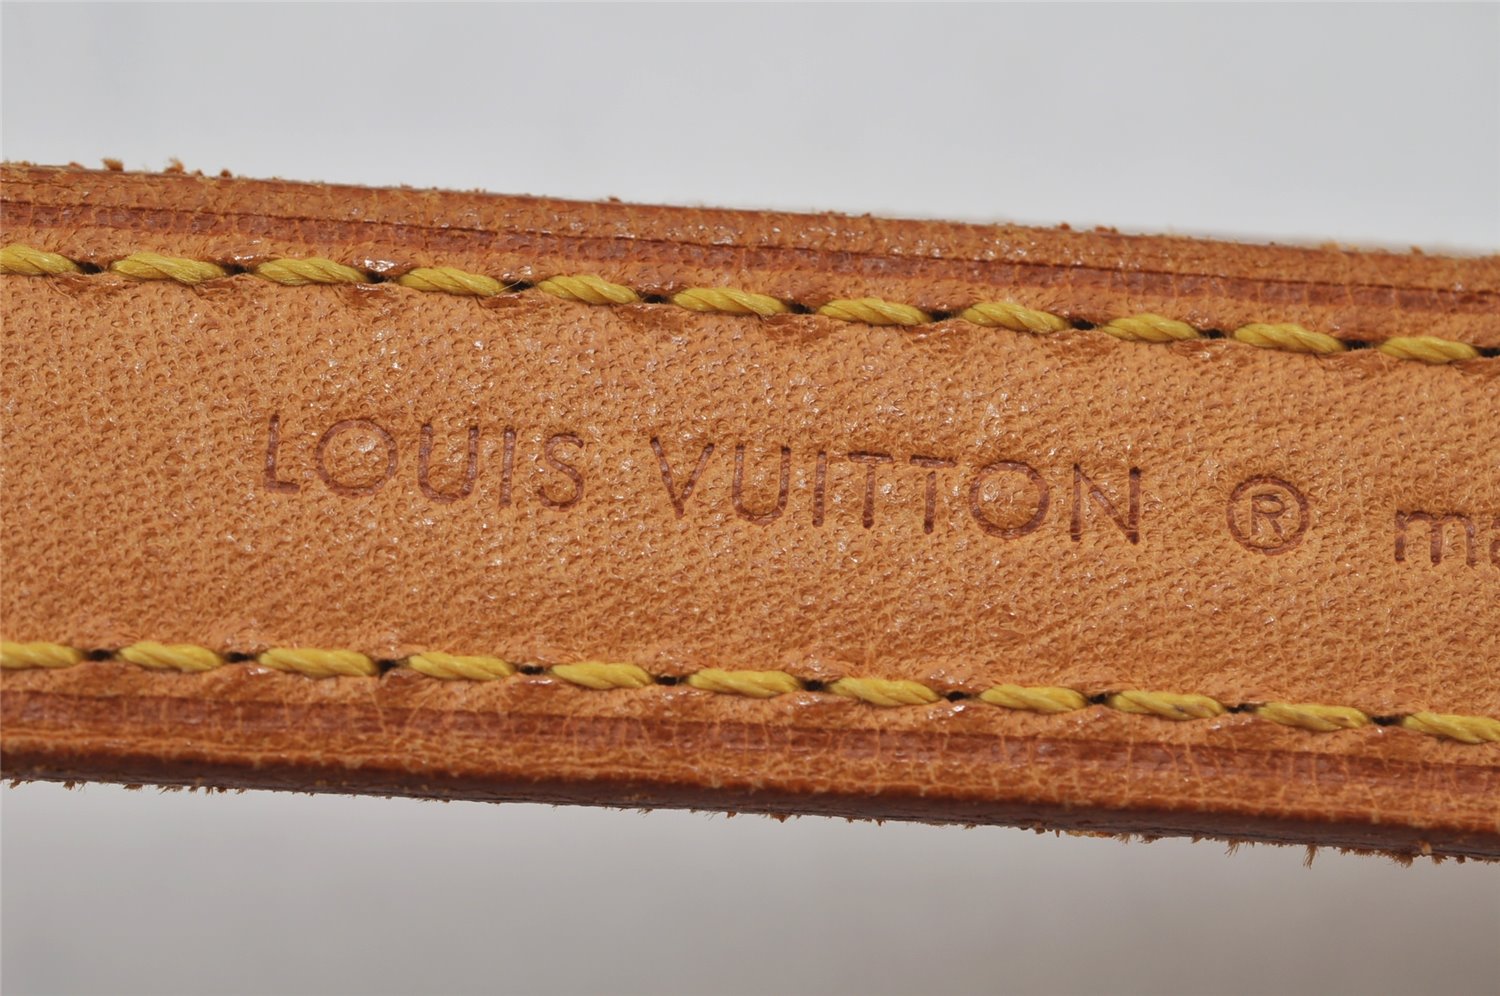 Authentic Louis Vuitton Leather Shoulder Strap Beige 41.7-48.8